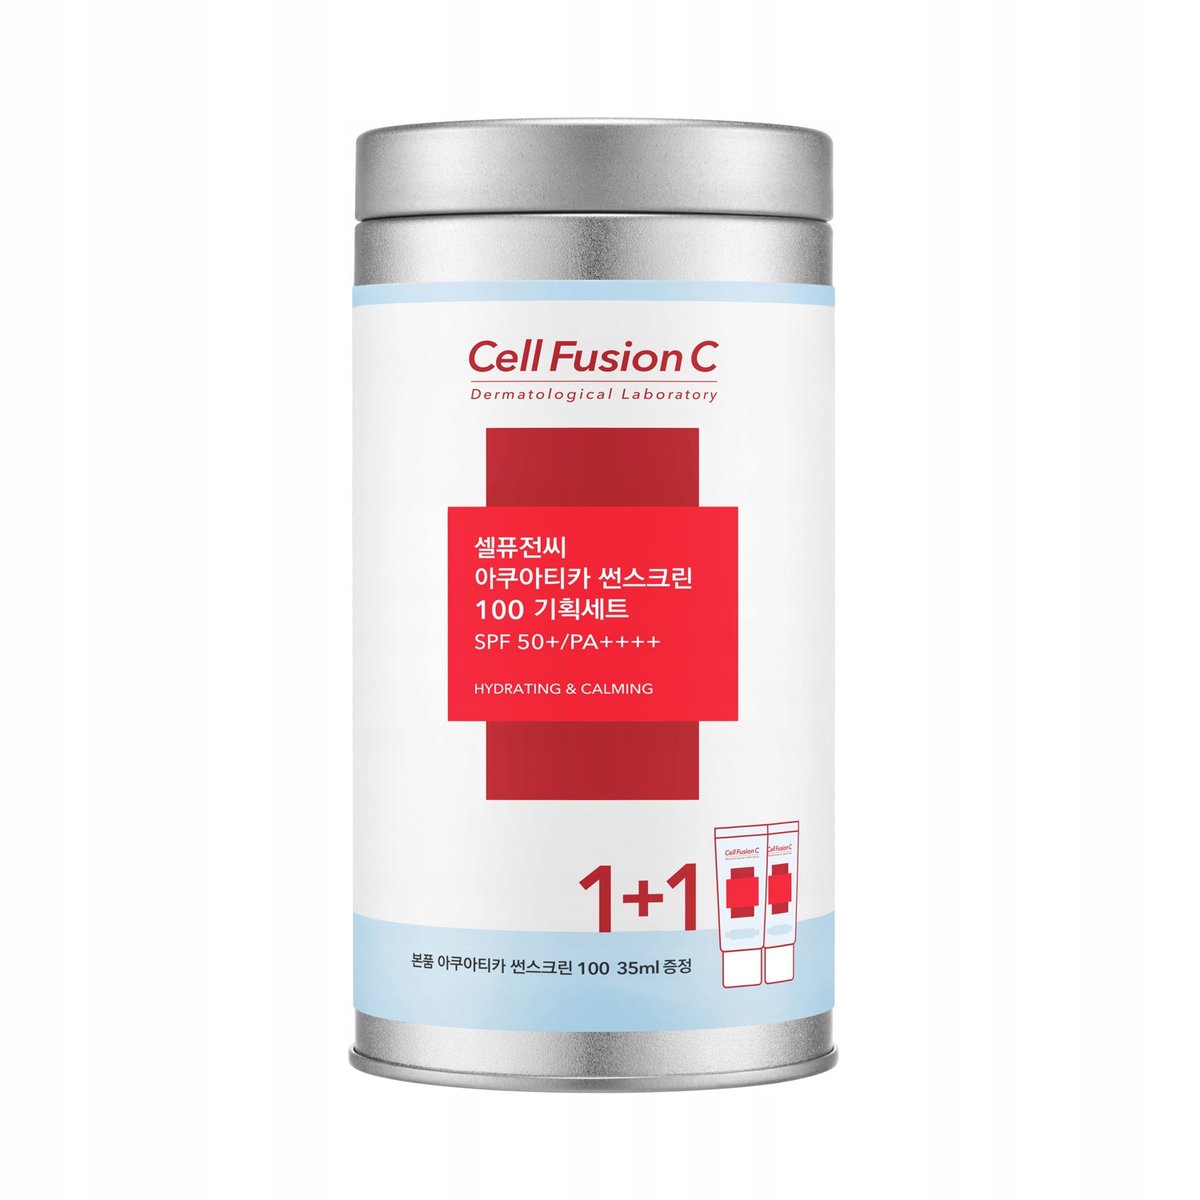 Cell Fusion C Aquatica Sunscreen 100 SPF 50+/PA+++ Set zestaw 1+1 krem przeciwsłoneczny 35 ml + 35 ml